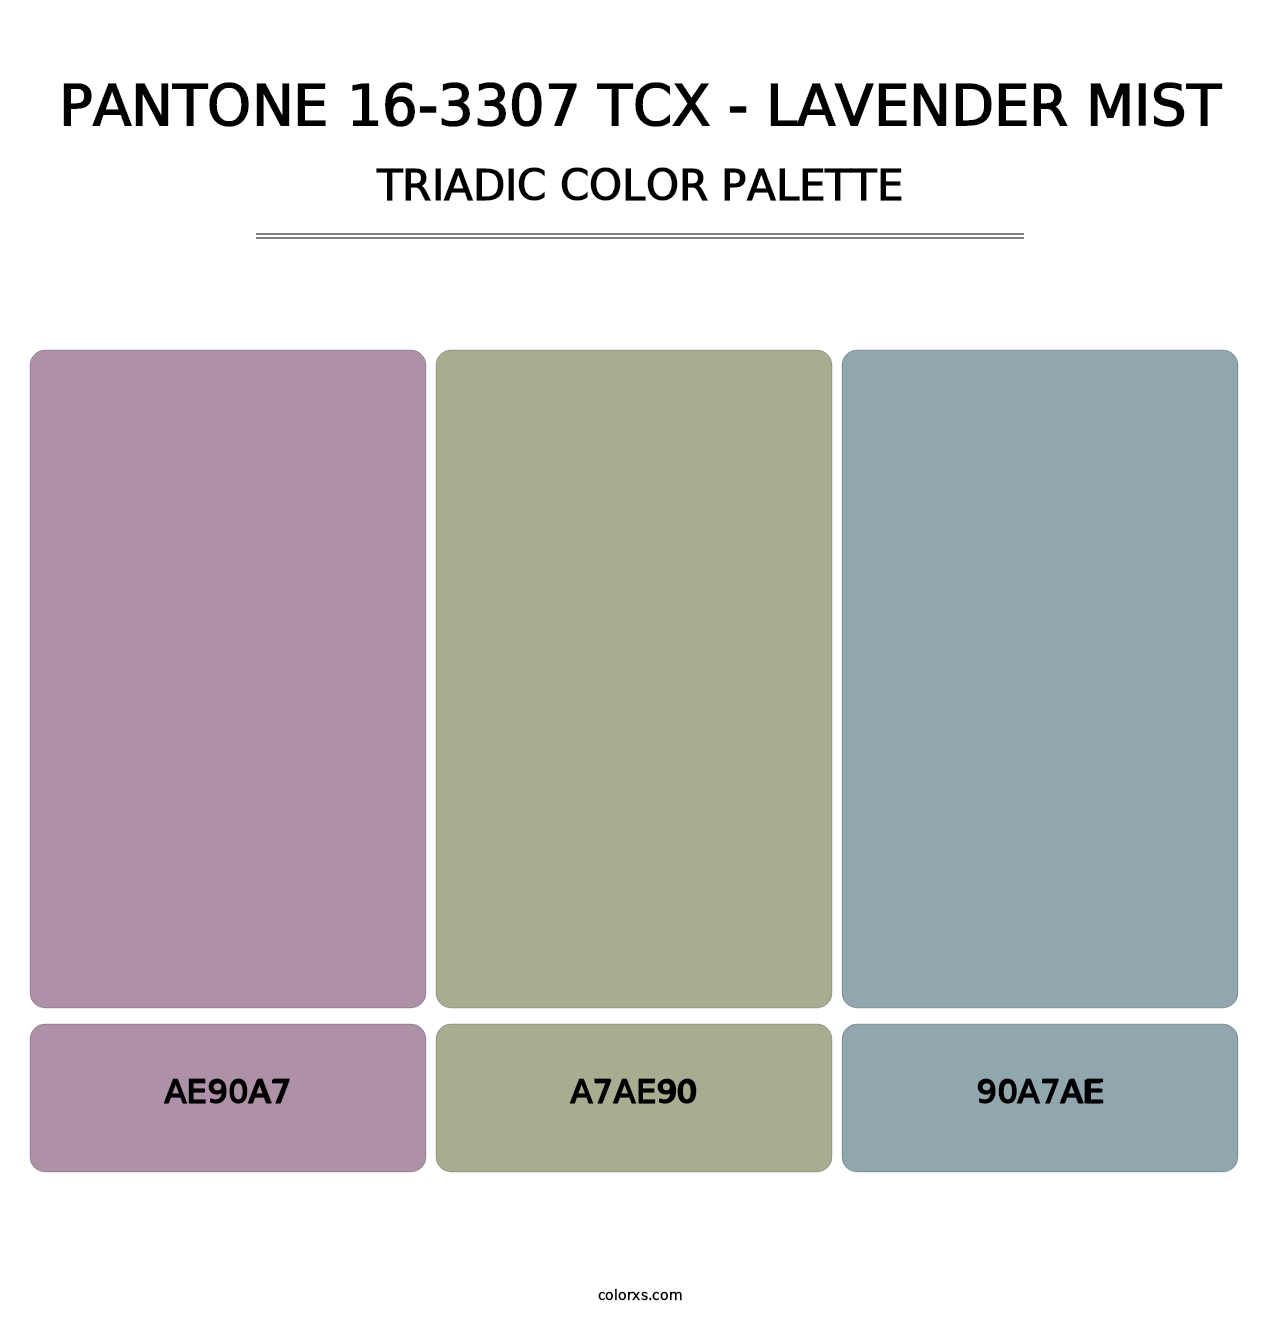 PANTONE 16-3307 TCX - Lavender Mist - Triadic Color Palette